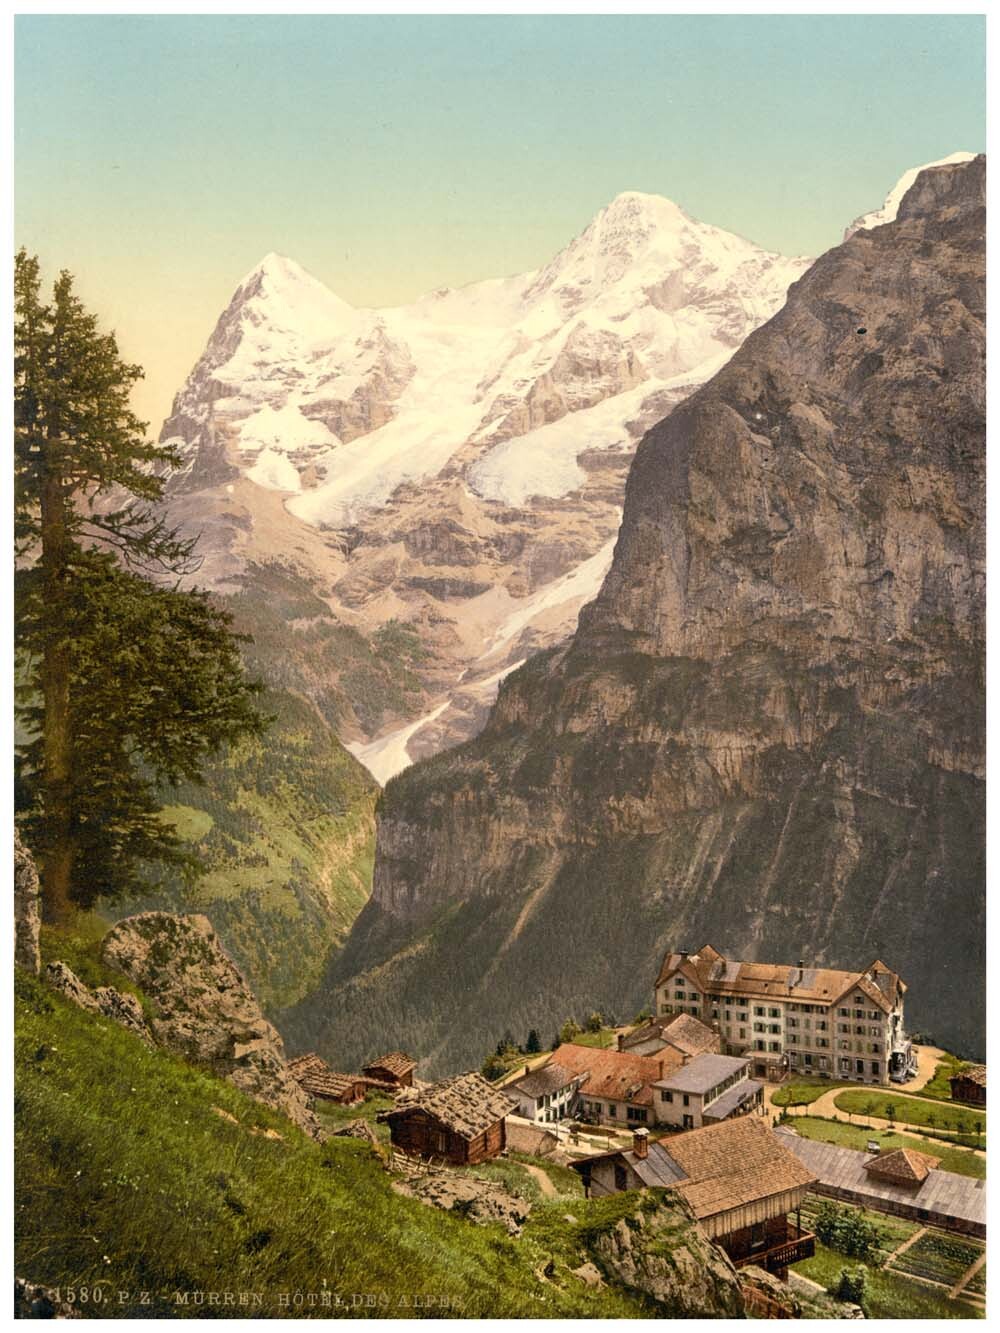 Murren, Hotel des Alps, Bernese Oberland, Switzerland 0400-4899